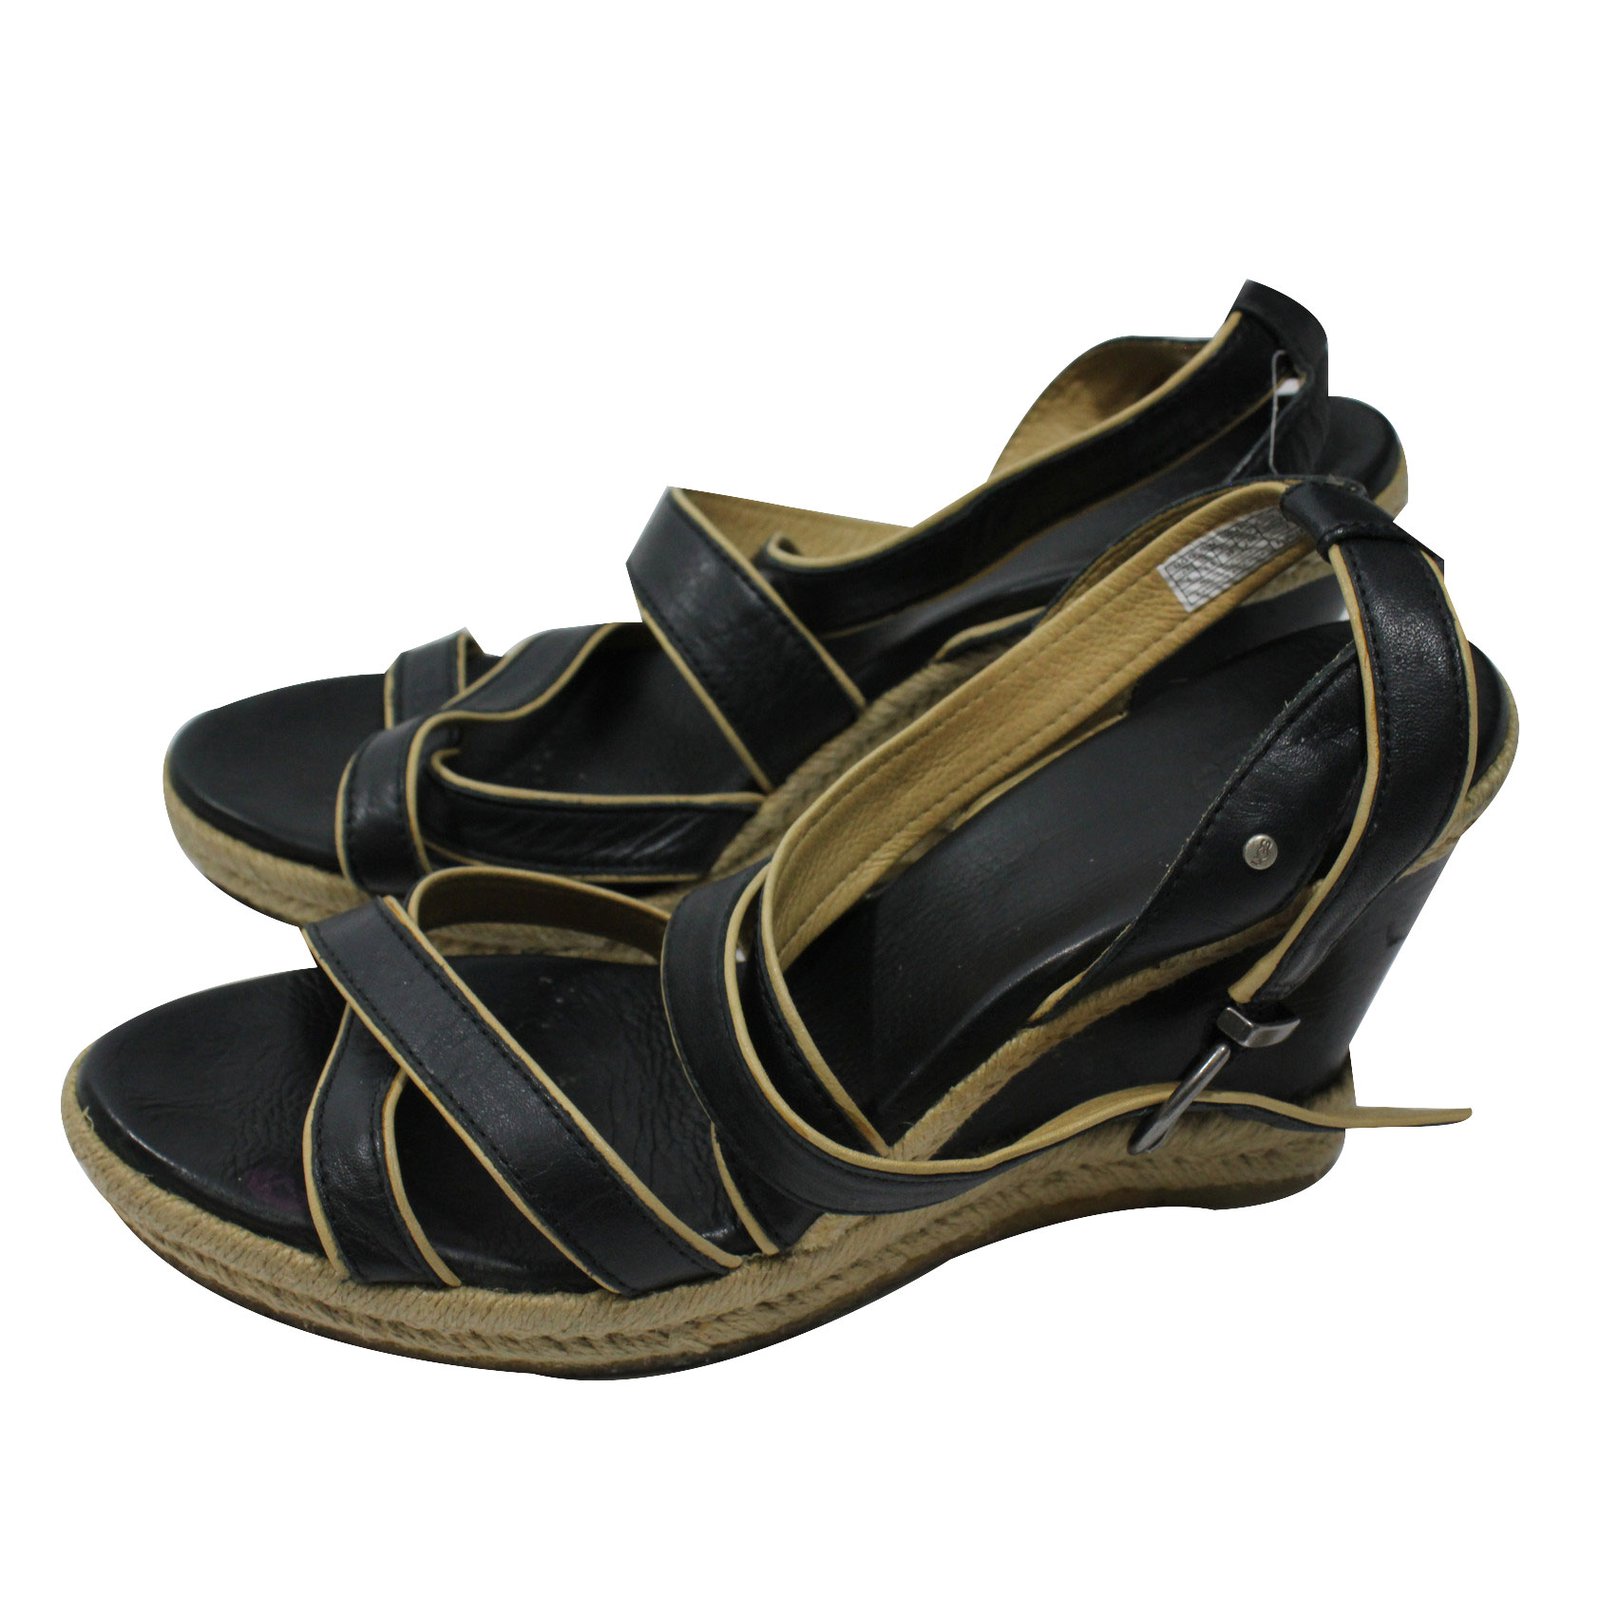 black ugg wedge sandals